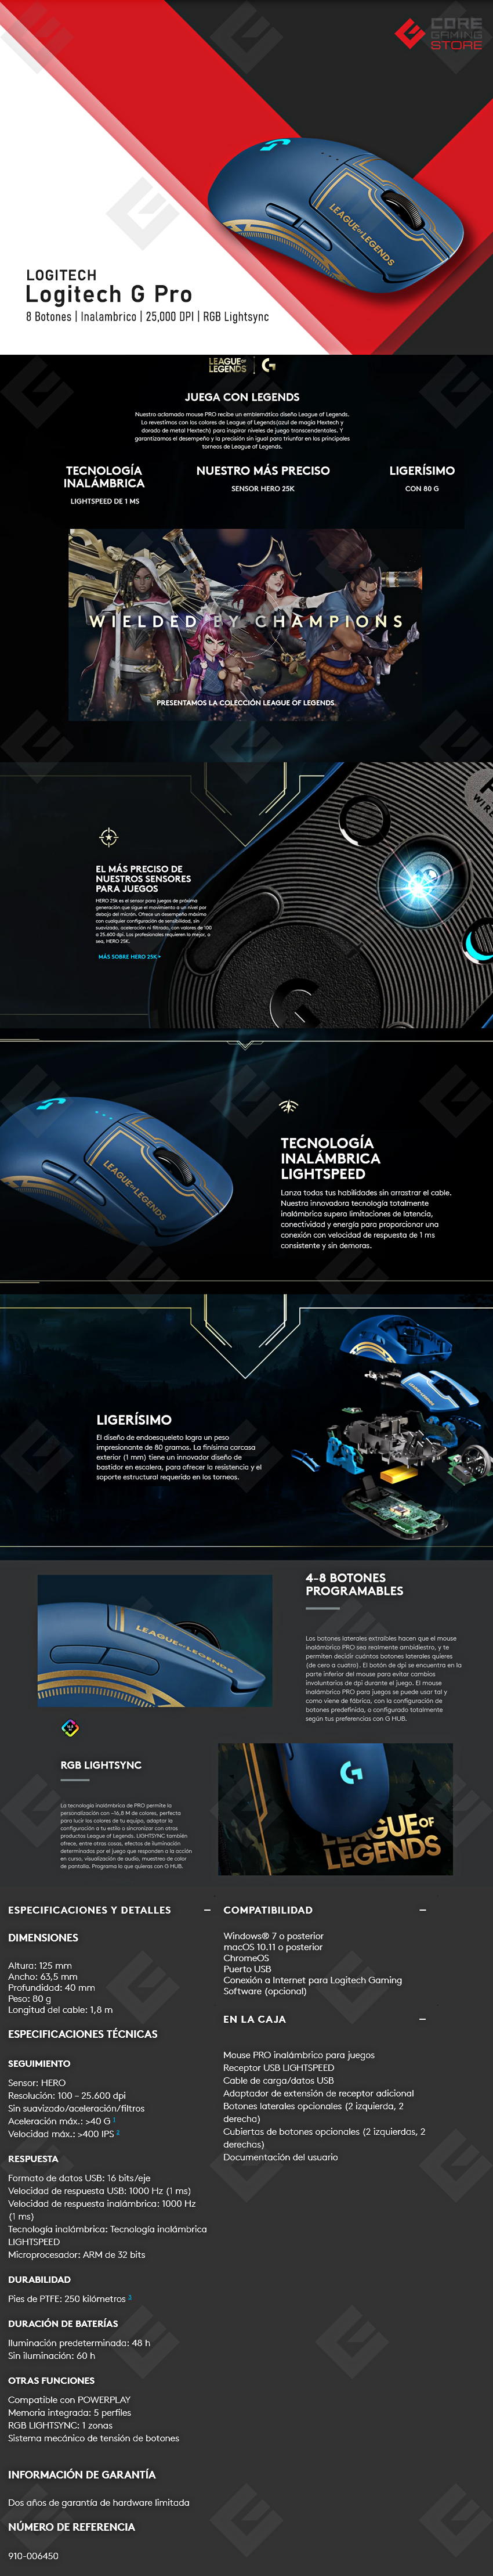 Mouse Logitech G PRO | Edicion Limitada League Of Legends | Lightspeed | Ultra Ligero | Inalámbrico | Sensor Hero 25K - 910-006450